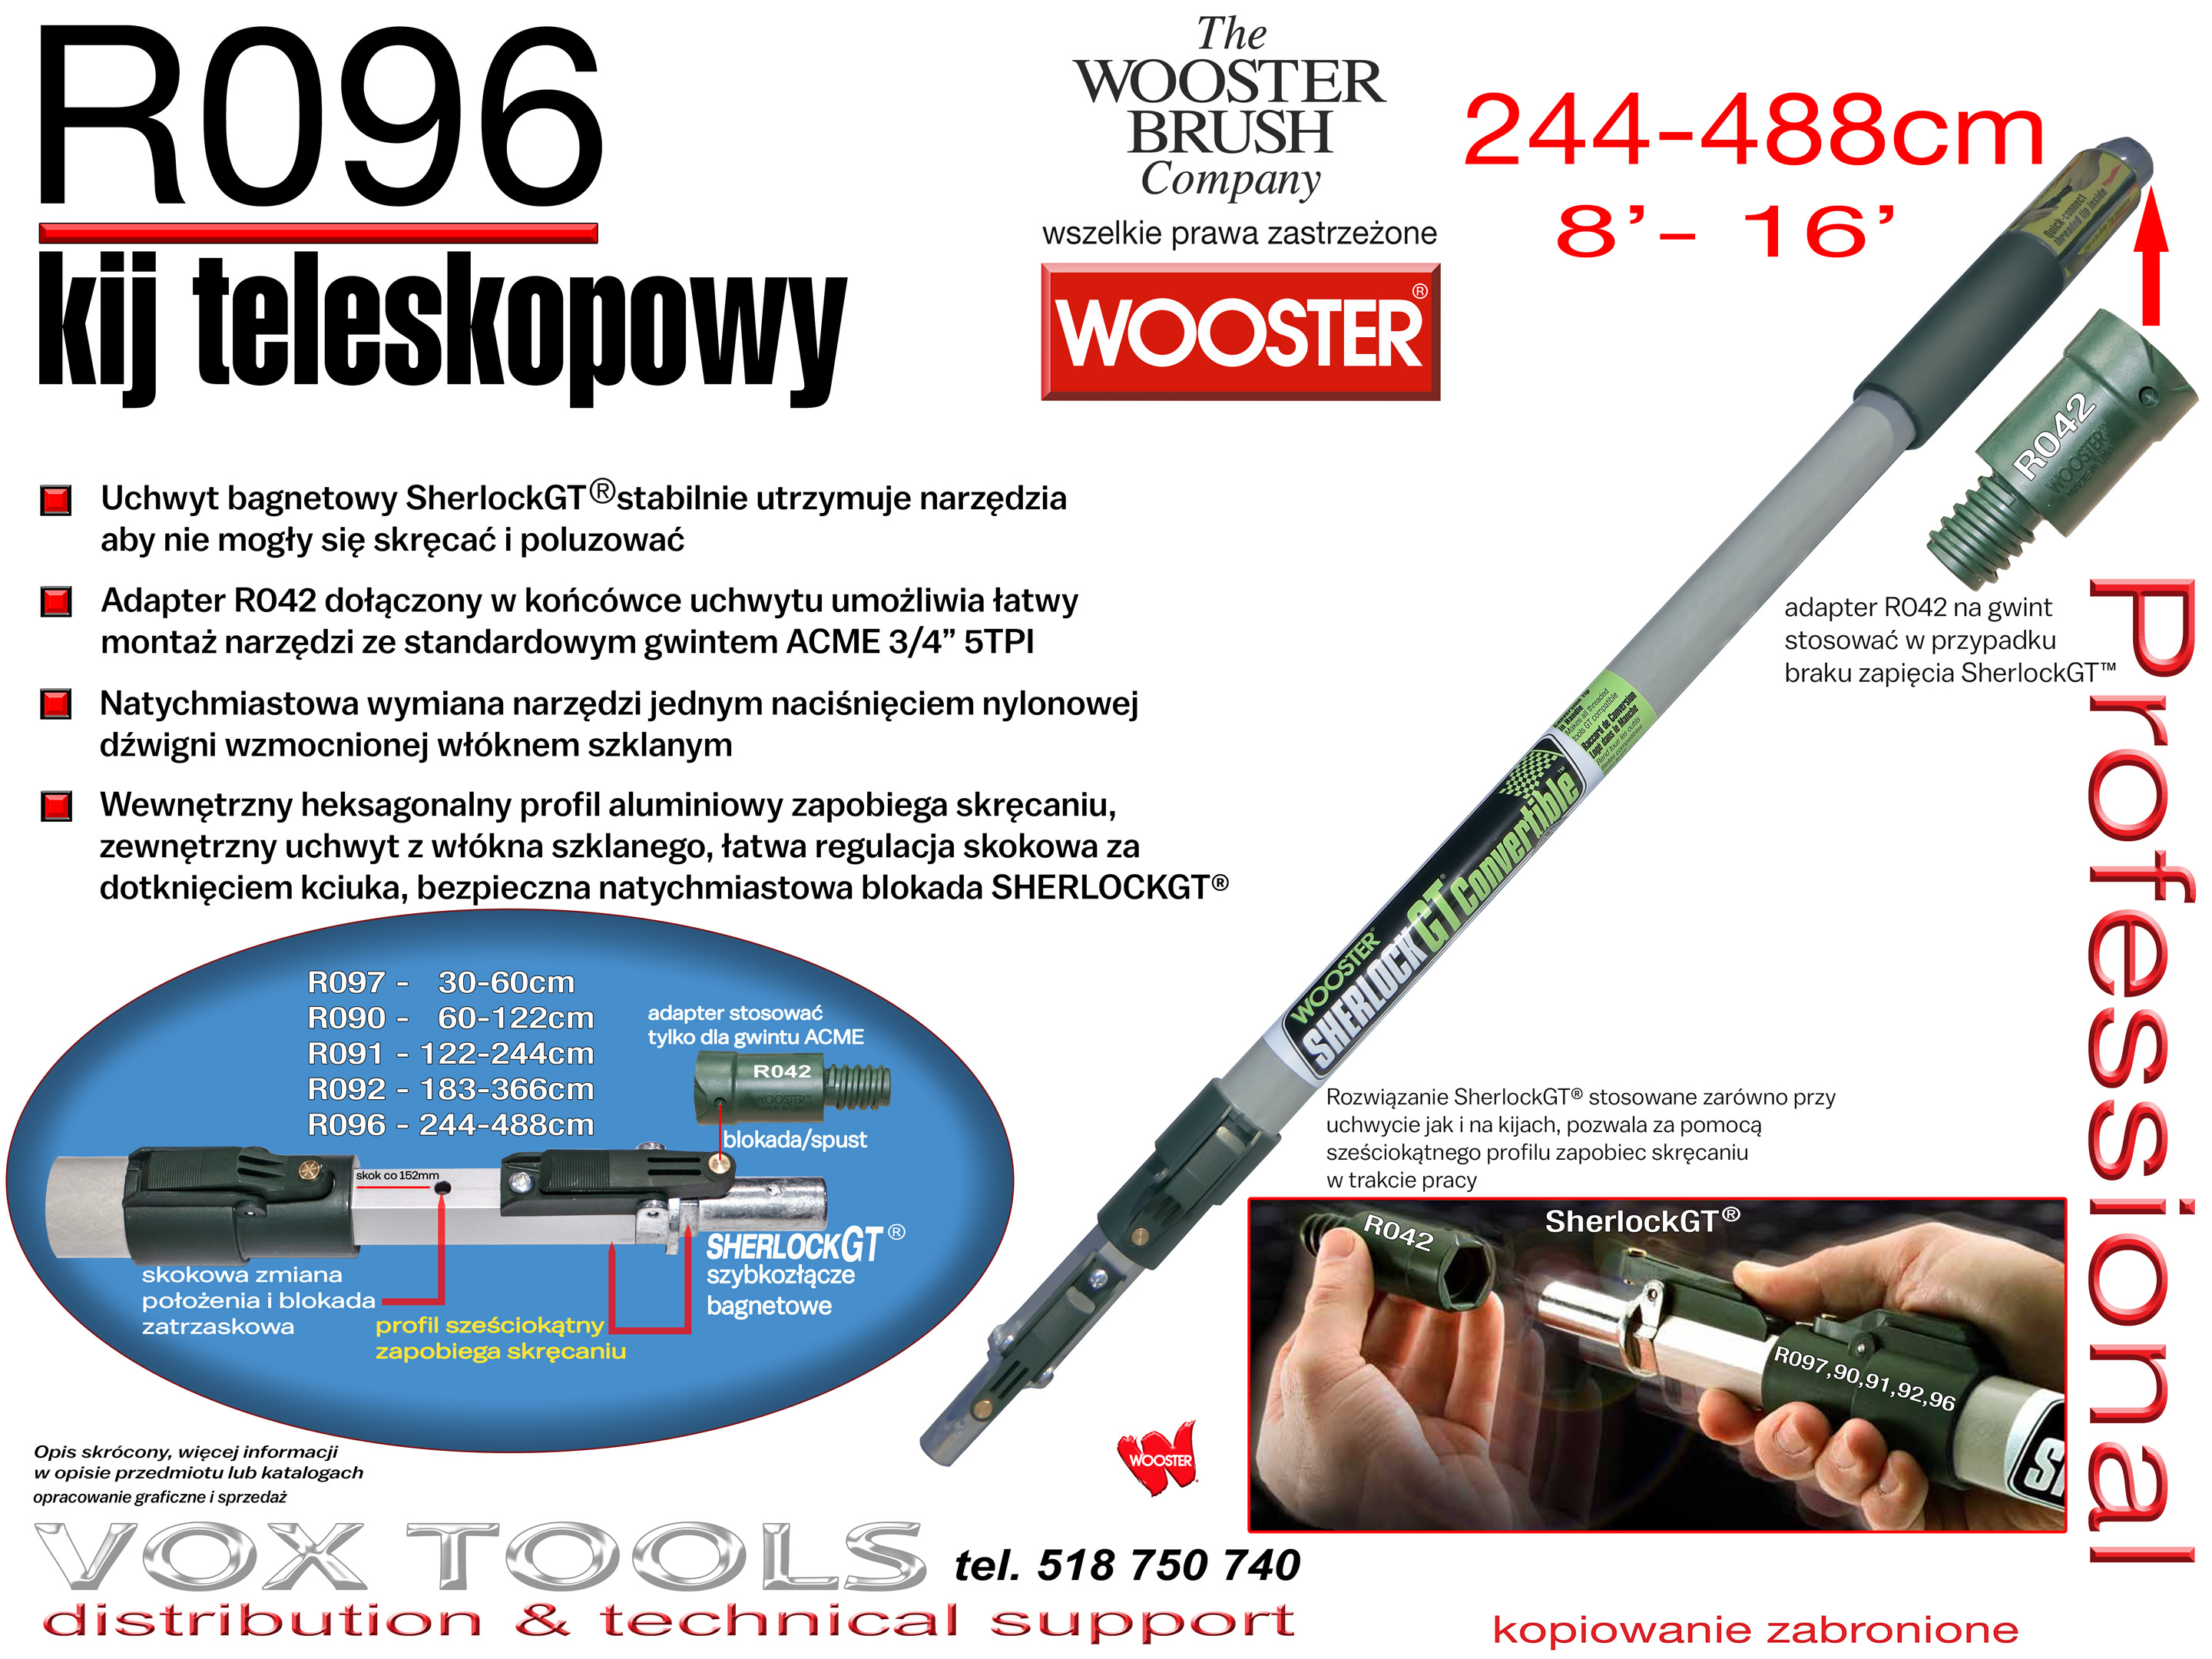 R096 Wooster Brush kij teleskopowy 244 - 488cm SherlockGT